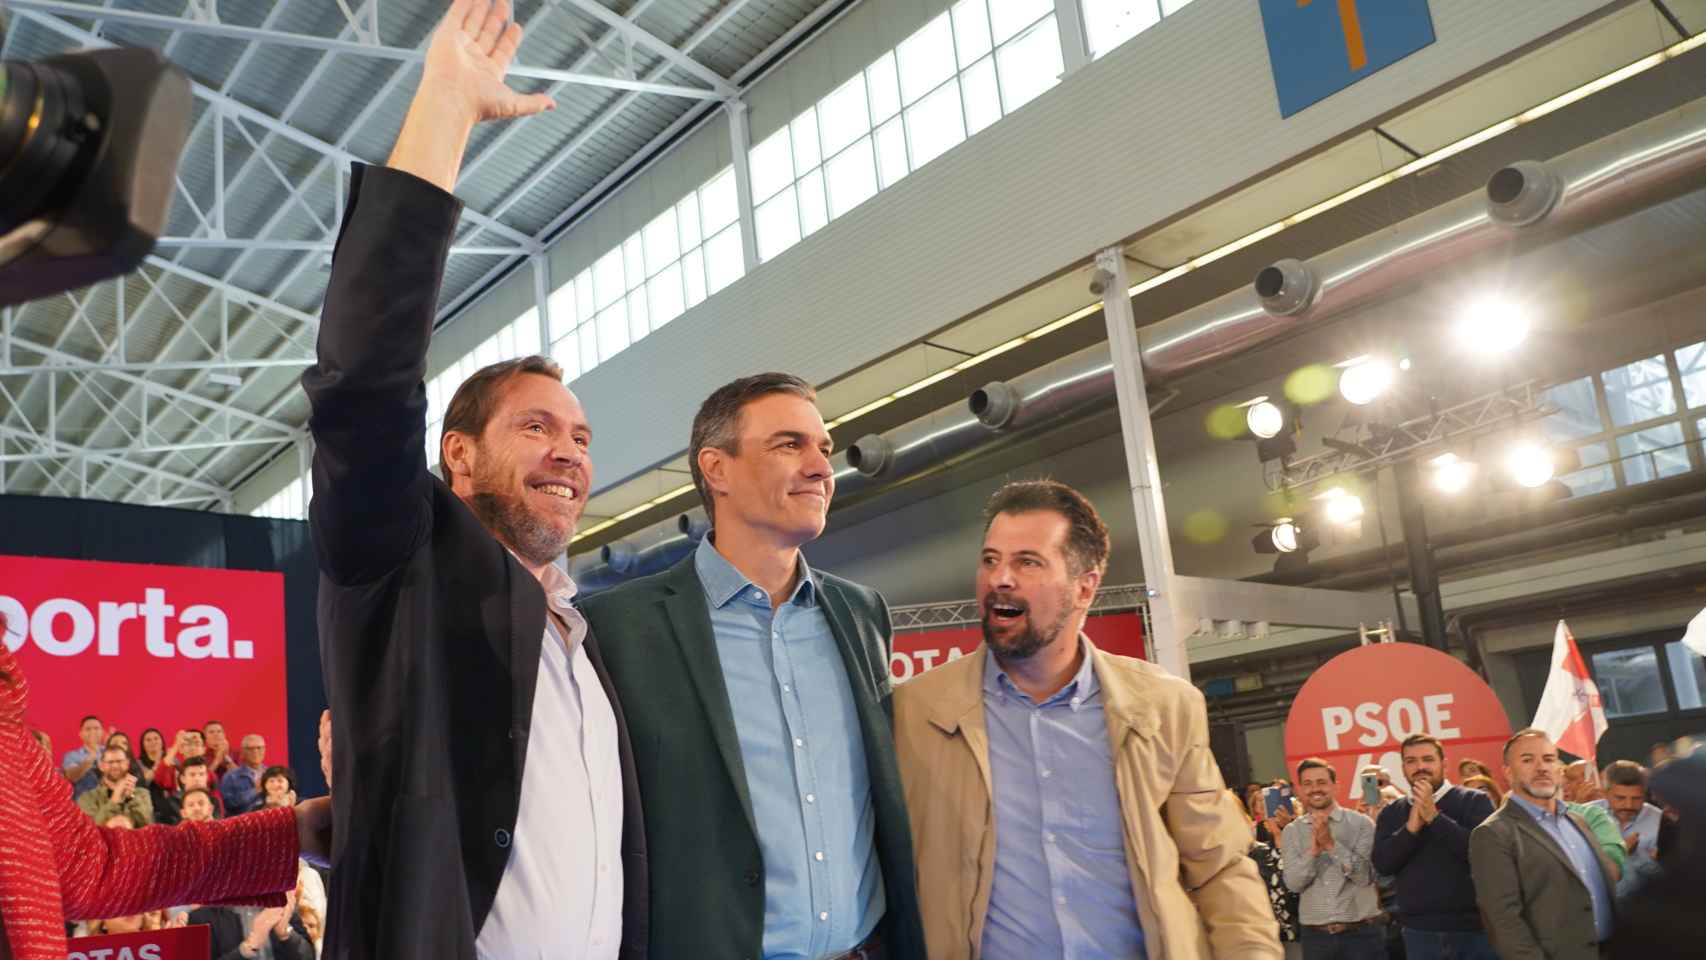 Óscar Puente, Pedro Sánchez y Luiz Tudanca en el mitin de Valladolid